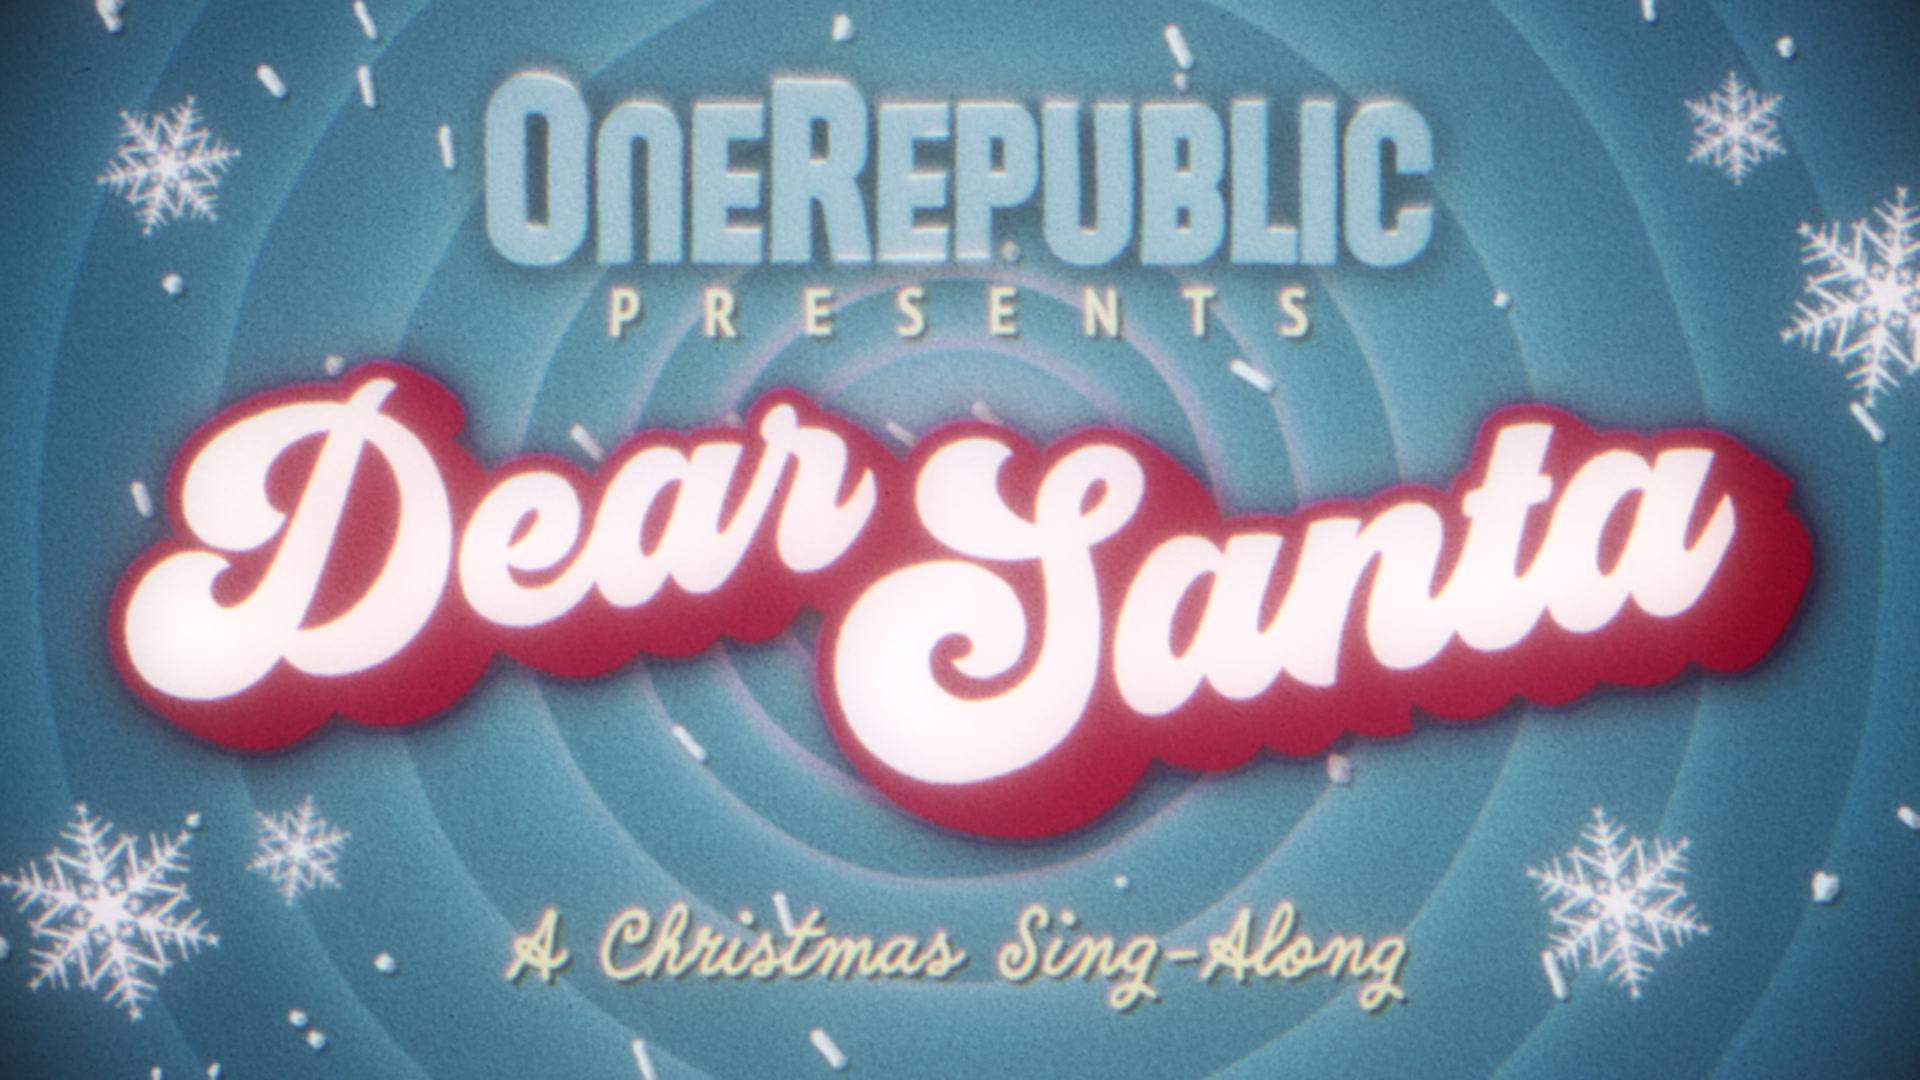 OneRepublic - Dear Santa (Lyric Video)